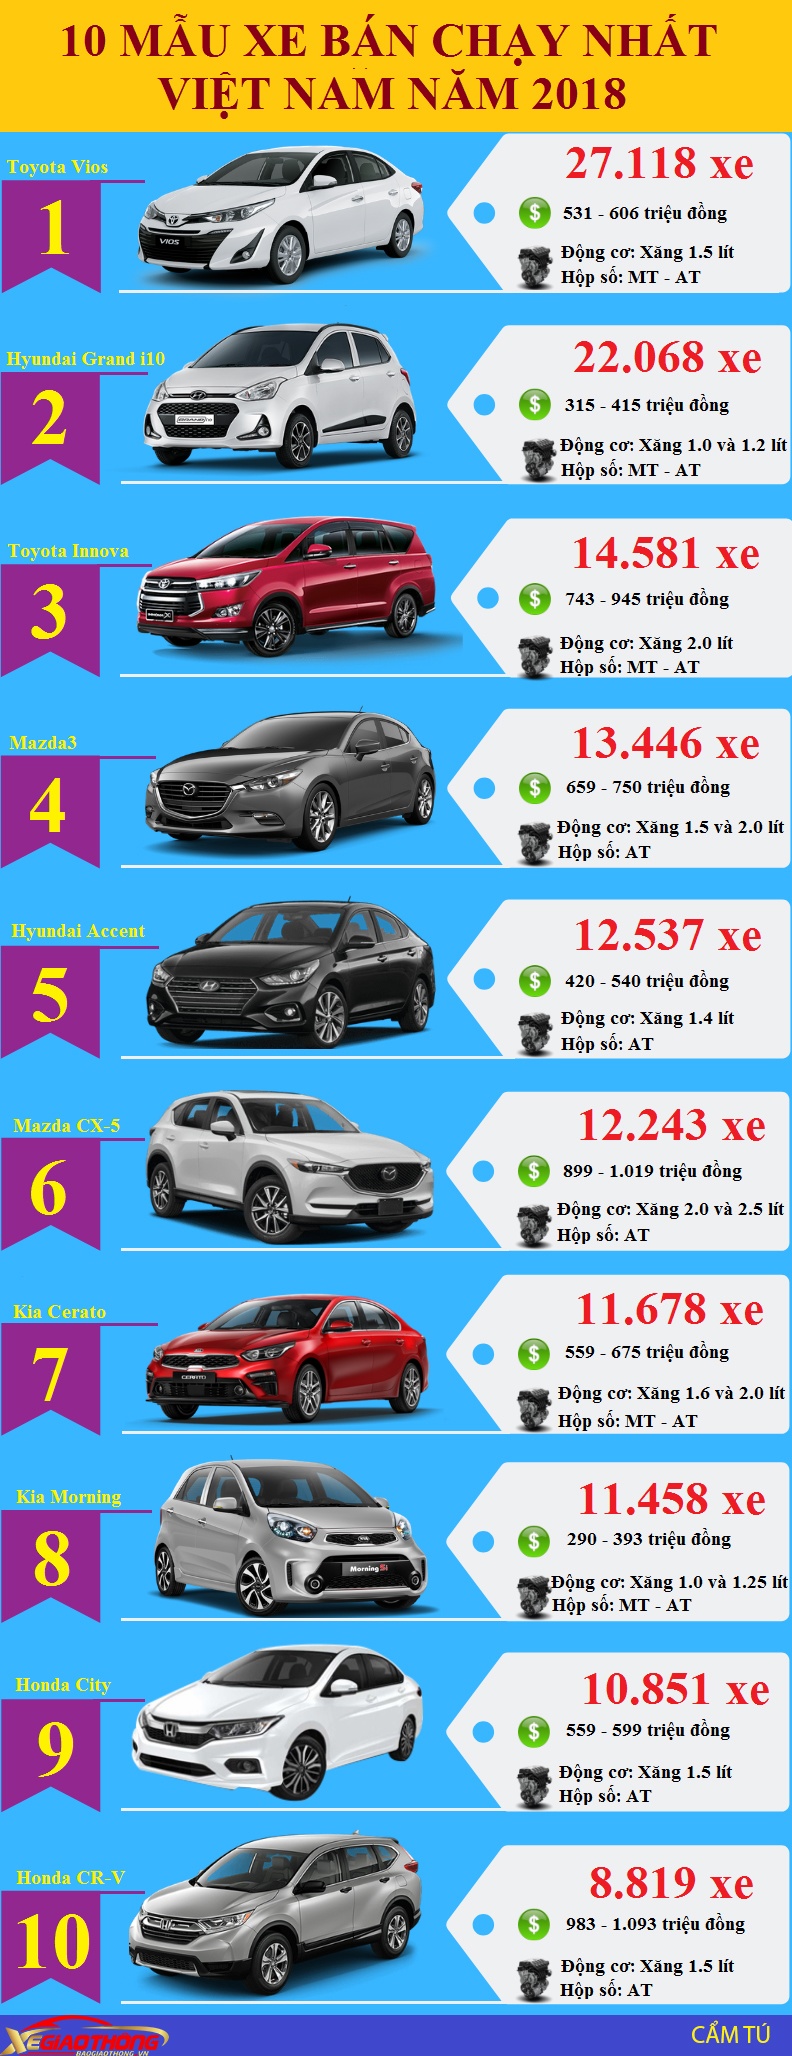 Infographic: 10 mẫu ô tô bán chạy nhất Việt Nam năm 2018 - 1